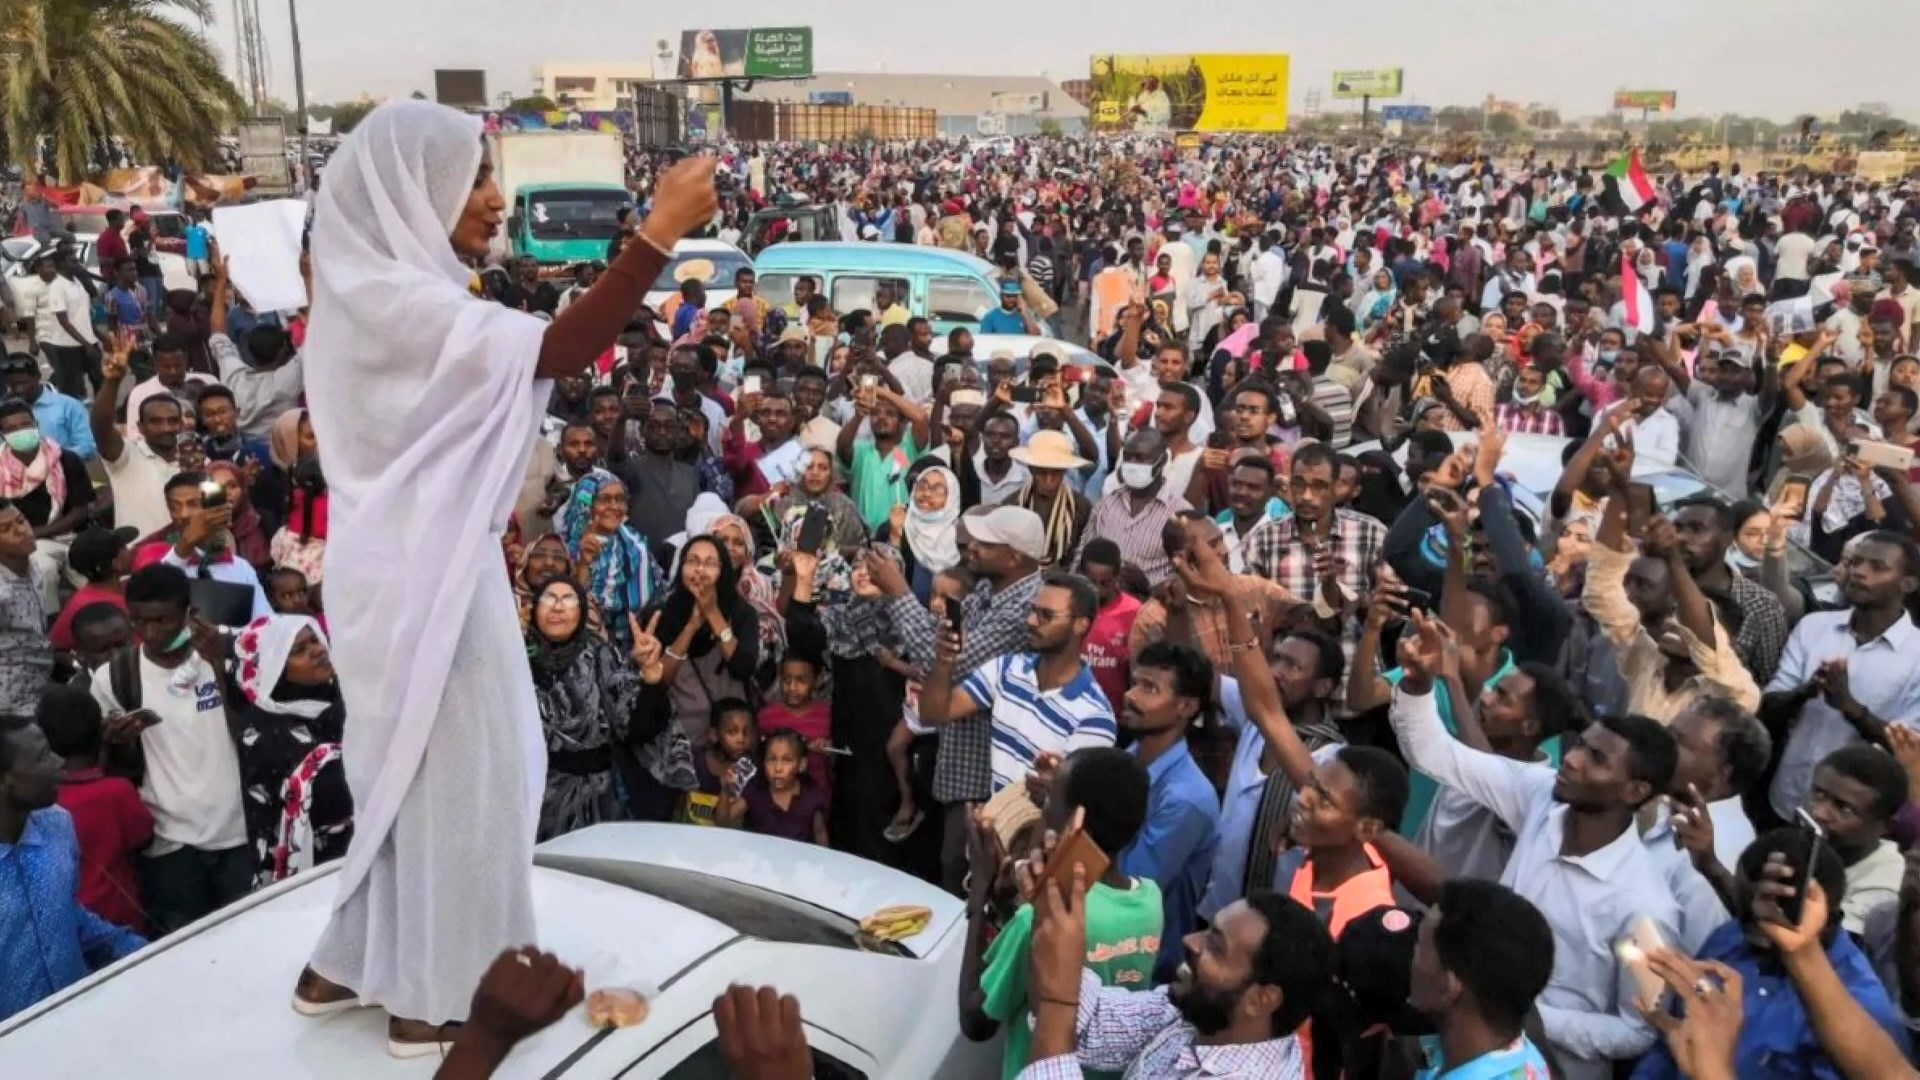 年輕女子薩拉赫成為蘇丹反政府示威象徵